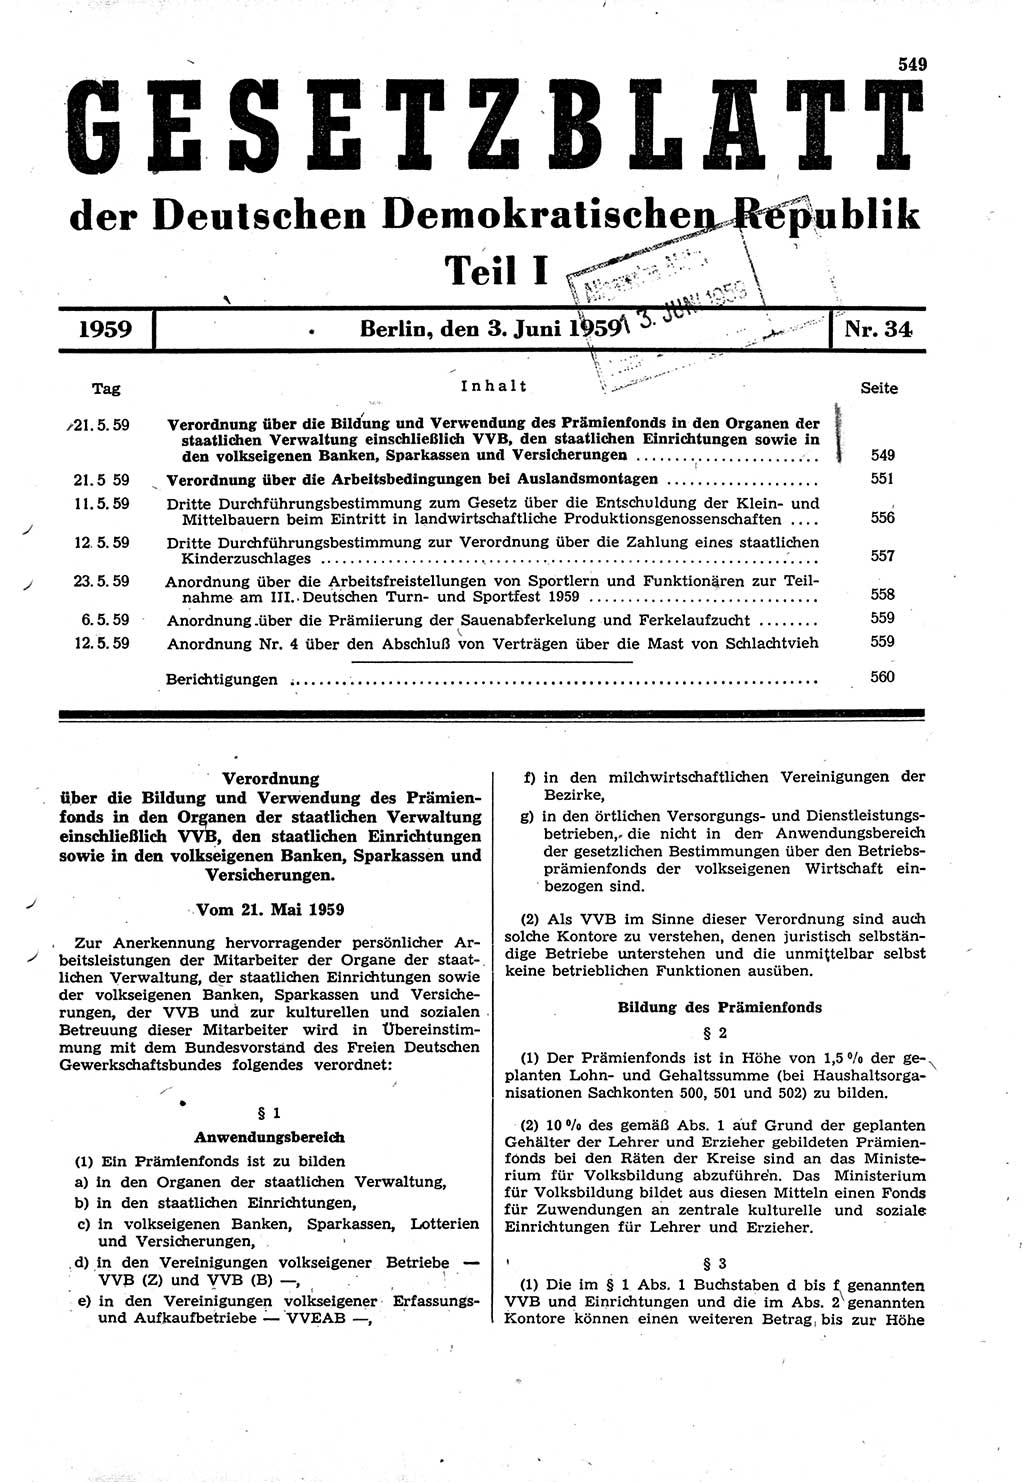 Gesetzblatt (GBl.) der Deutschen Demokratischen Republik (DDR) Teil Ⅰ 1959, Seite 549 (GBl. DDR Ⅰ 1959, S. 549)